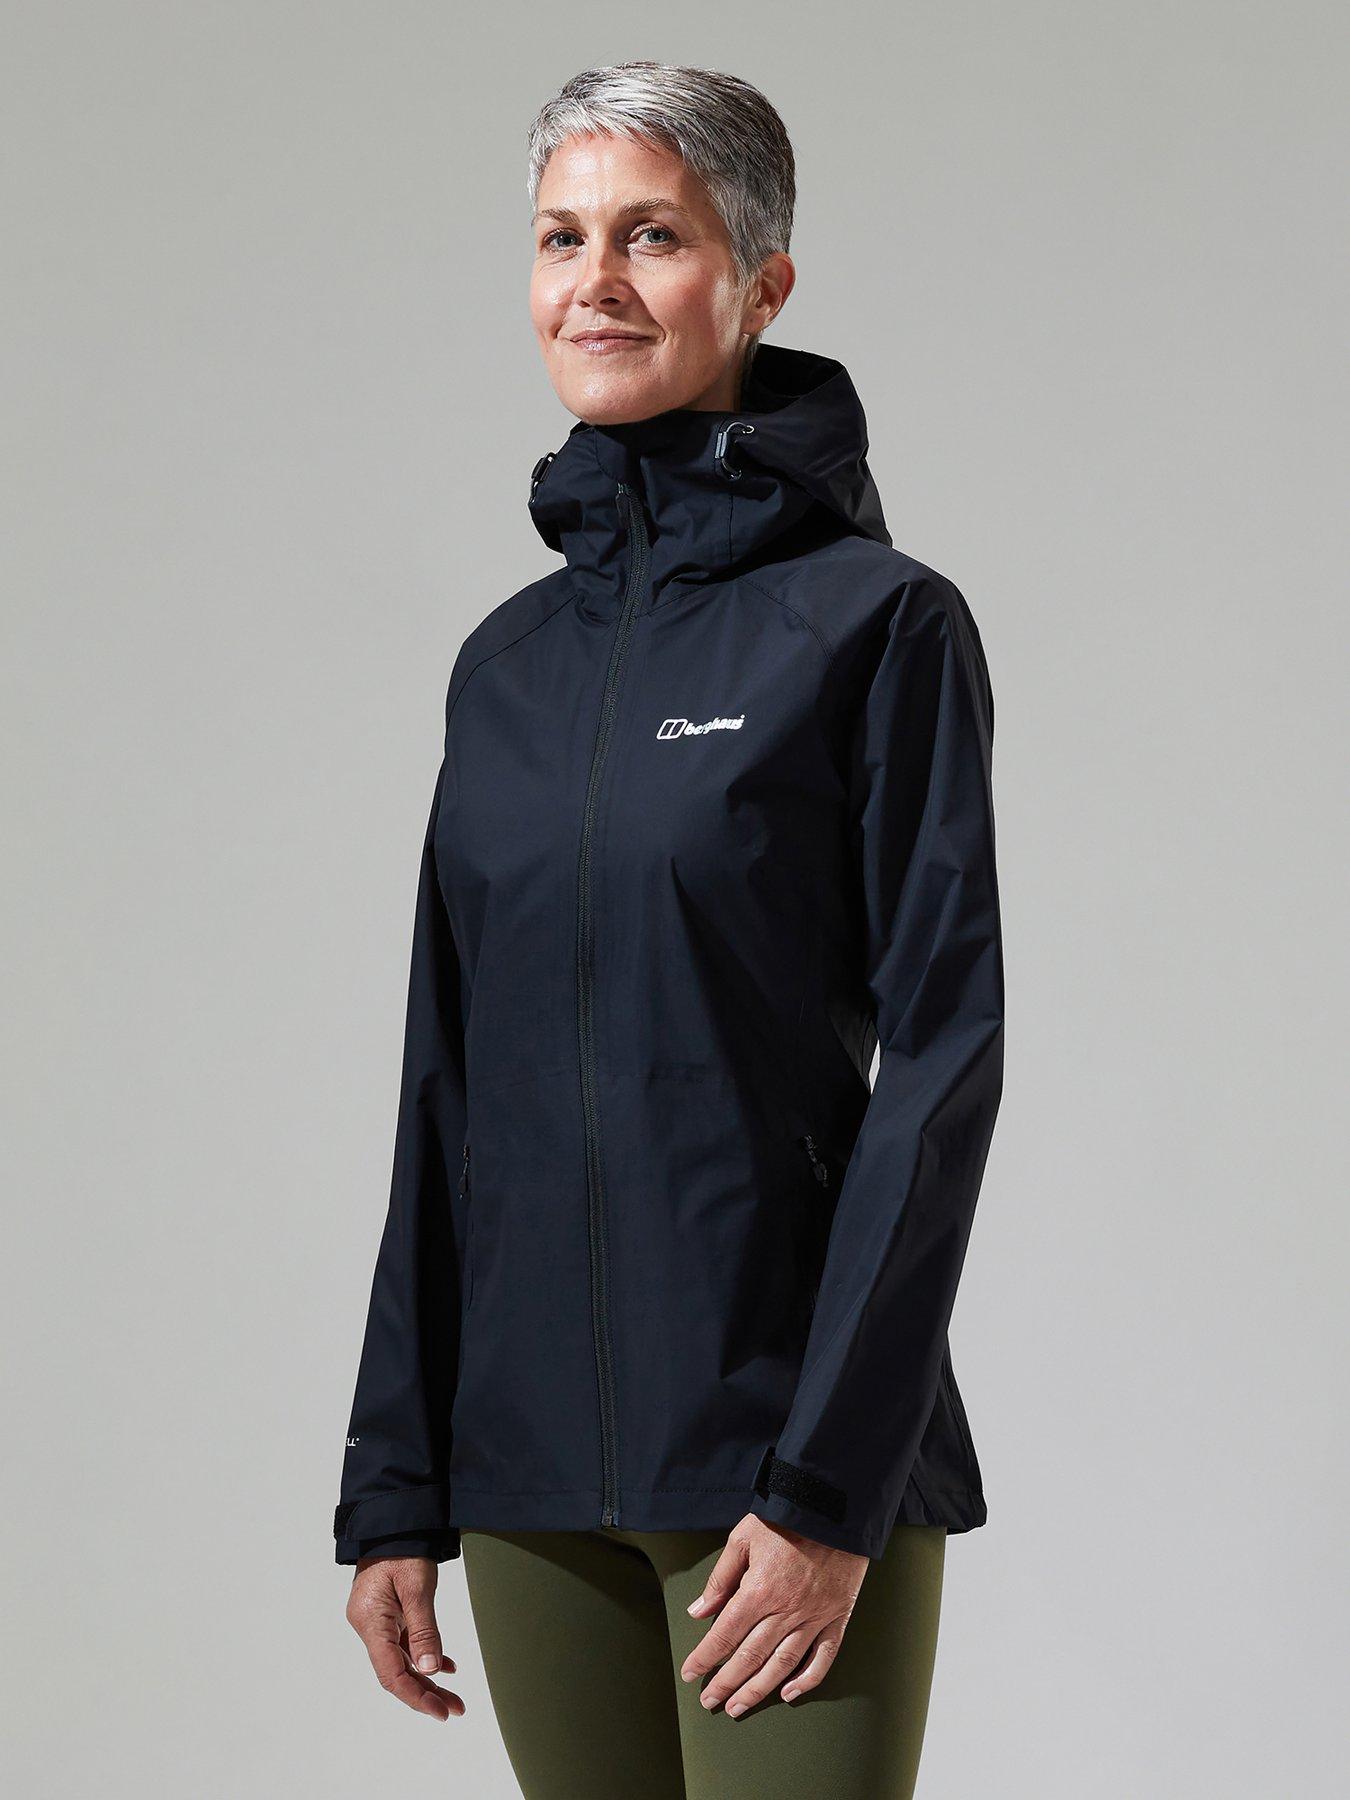 DKNY Sport Jacket / Activewear , XL, EUC  Active wear, Sports jacket,  Clothes design